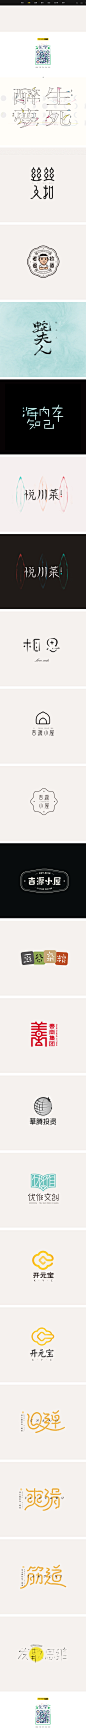 字设合辑 / 贰-字体传奇网-中国首个字体品牌设计师交流网